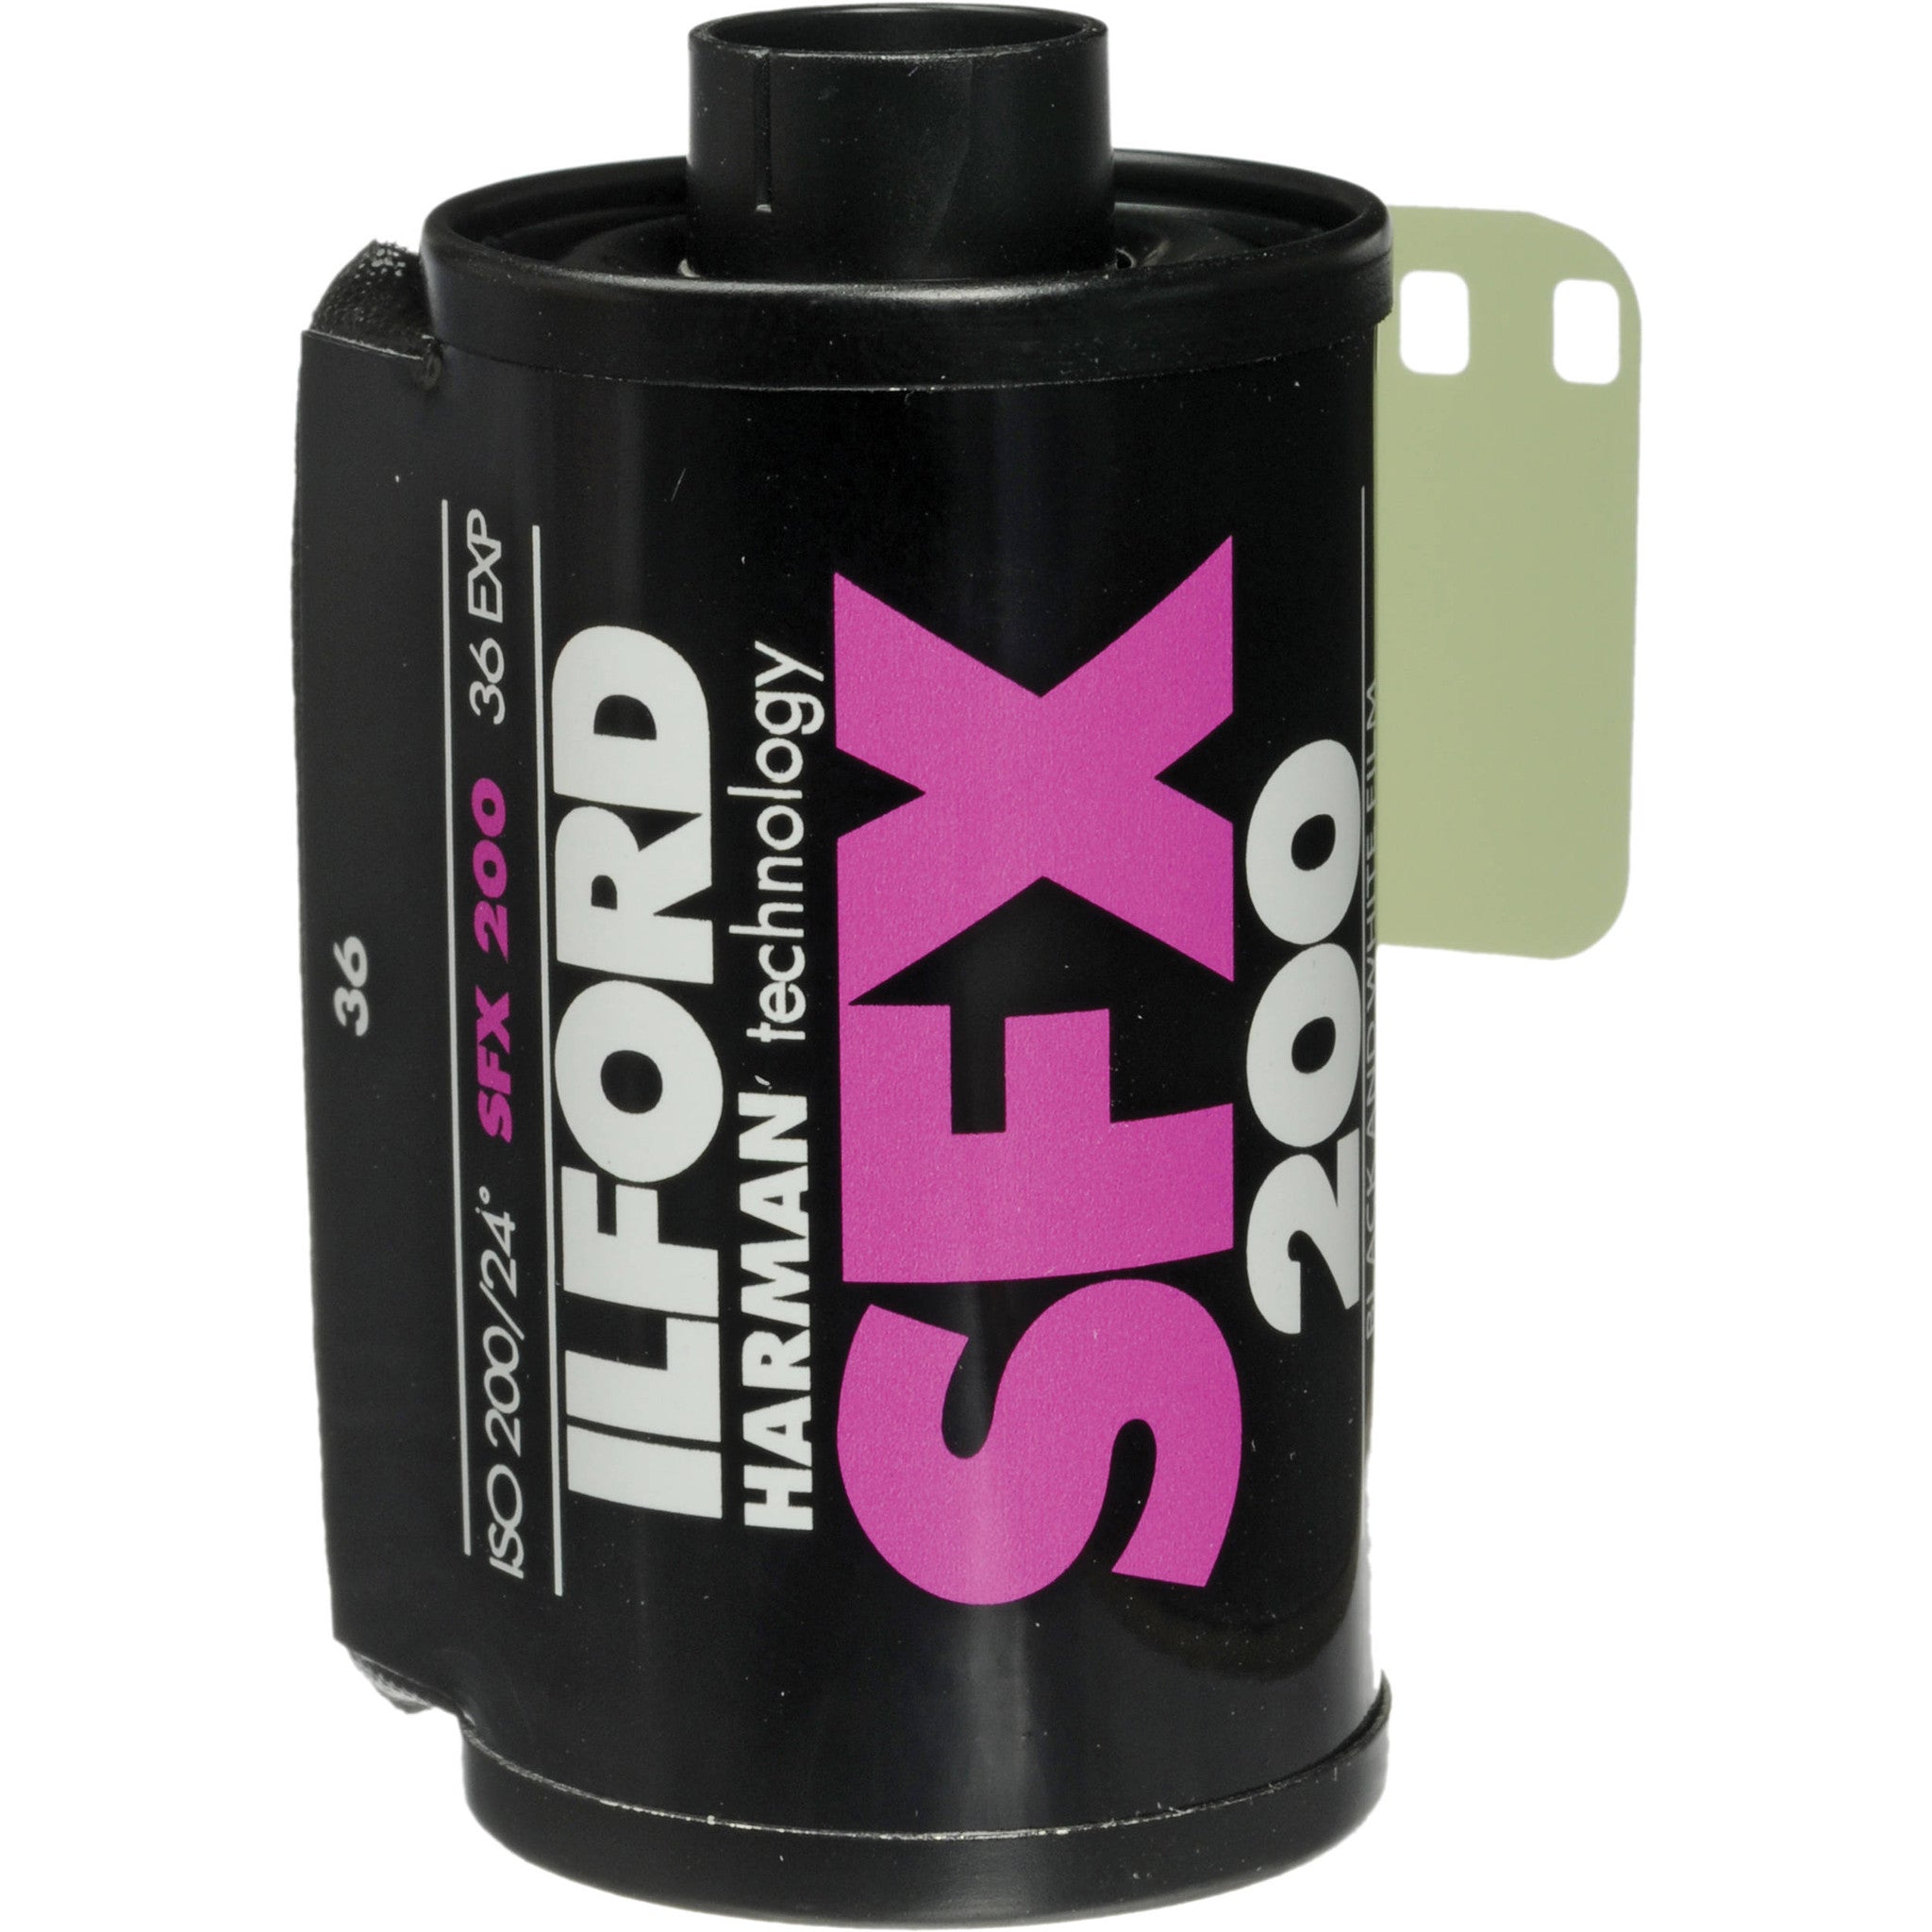 Ilford SFX 200 135-36 Black and White Film (One Roll), camera film, Ilford - Pictureline 